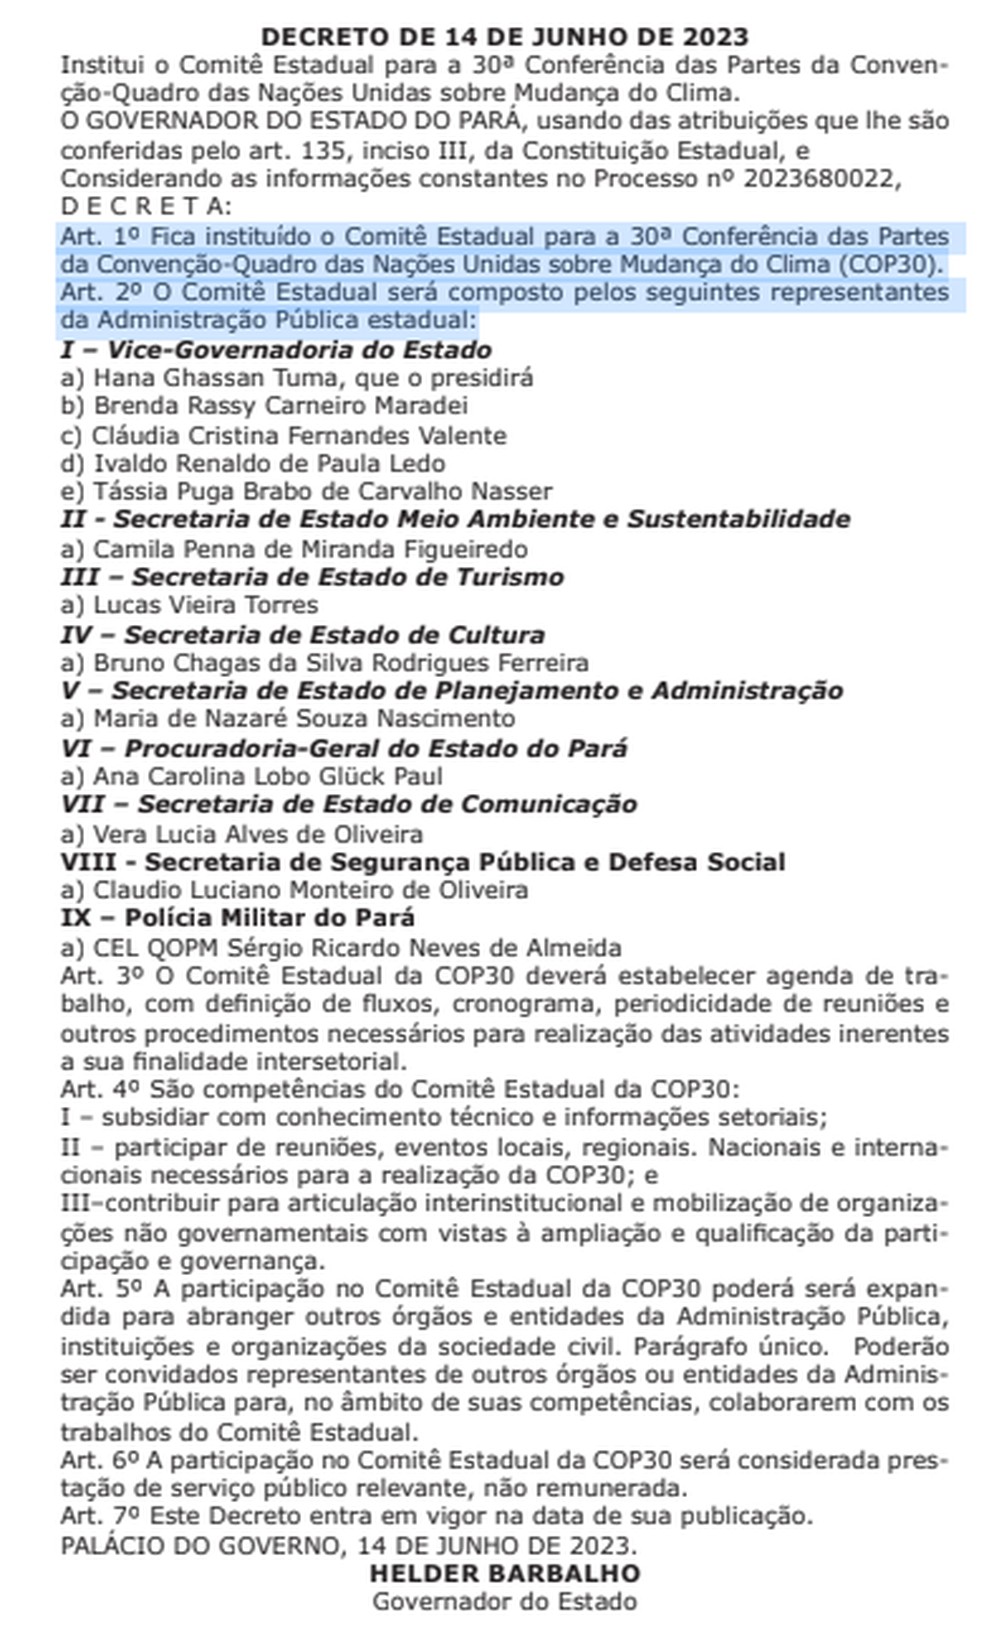 Governo do Pará cria comitê para realização da COP 30 em Belém. — Foto: Reprodução / Diário Oficial do Pará